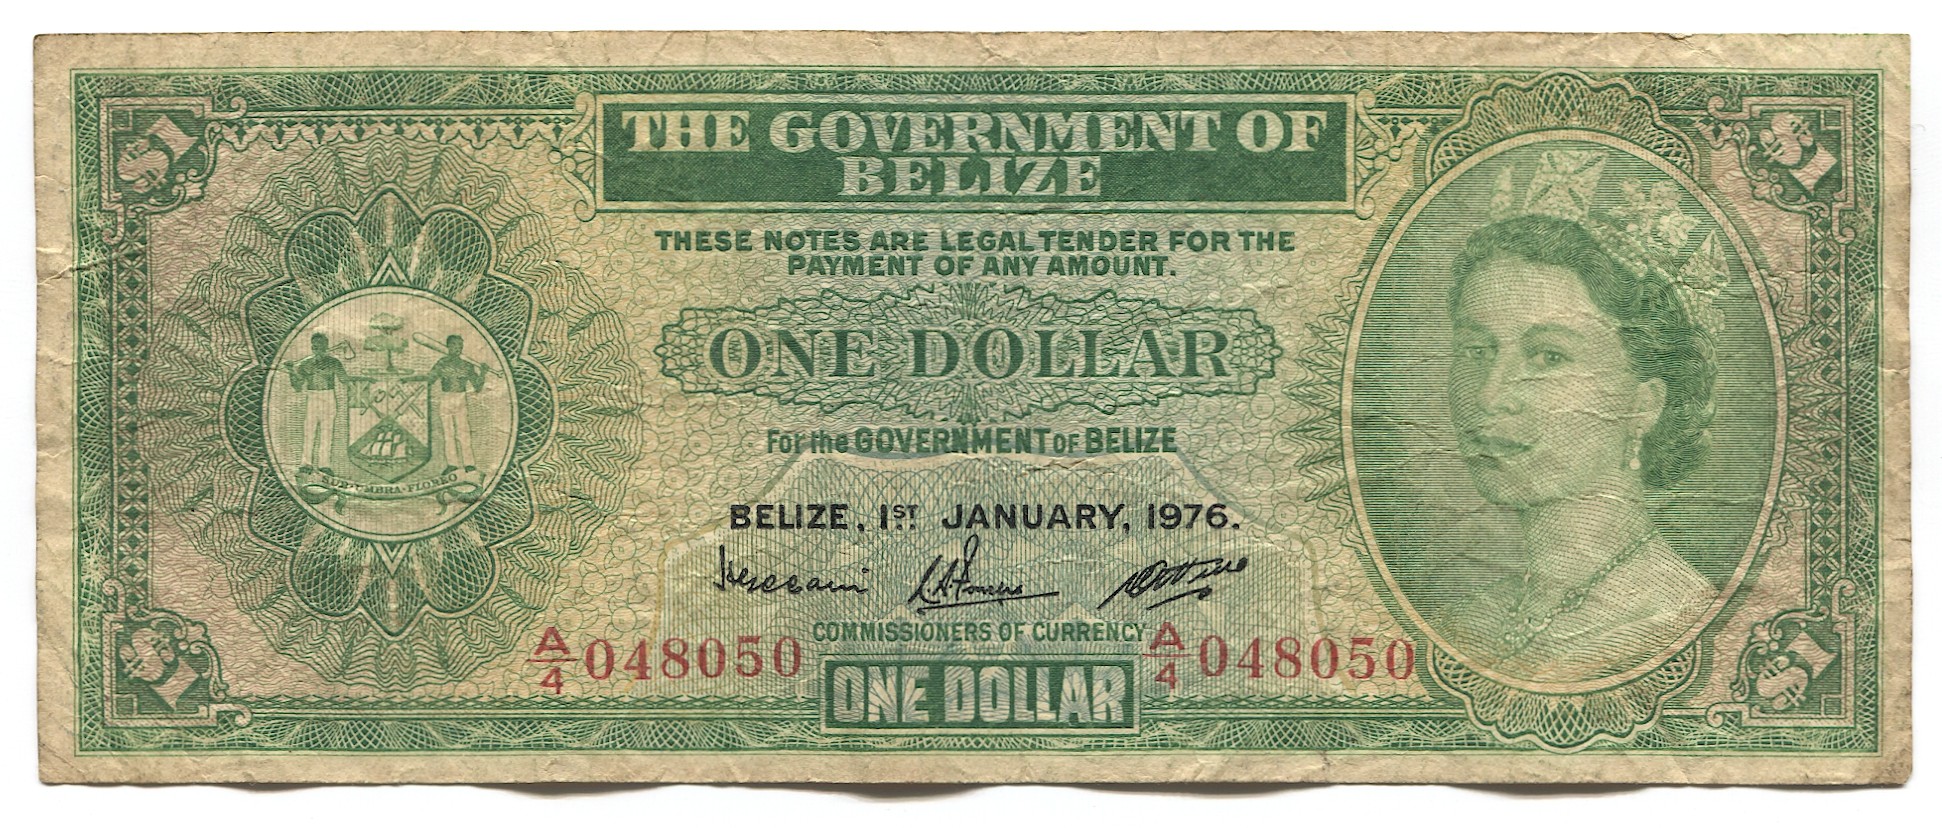 Доллары 1990 года фото. Британский Гондурас. Belize 1 Dollar Nickel-Brass 2007. Belize 1 Dollar Nickel-Brass 2022. Доллар в 19 году